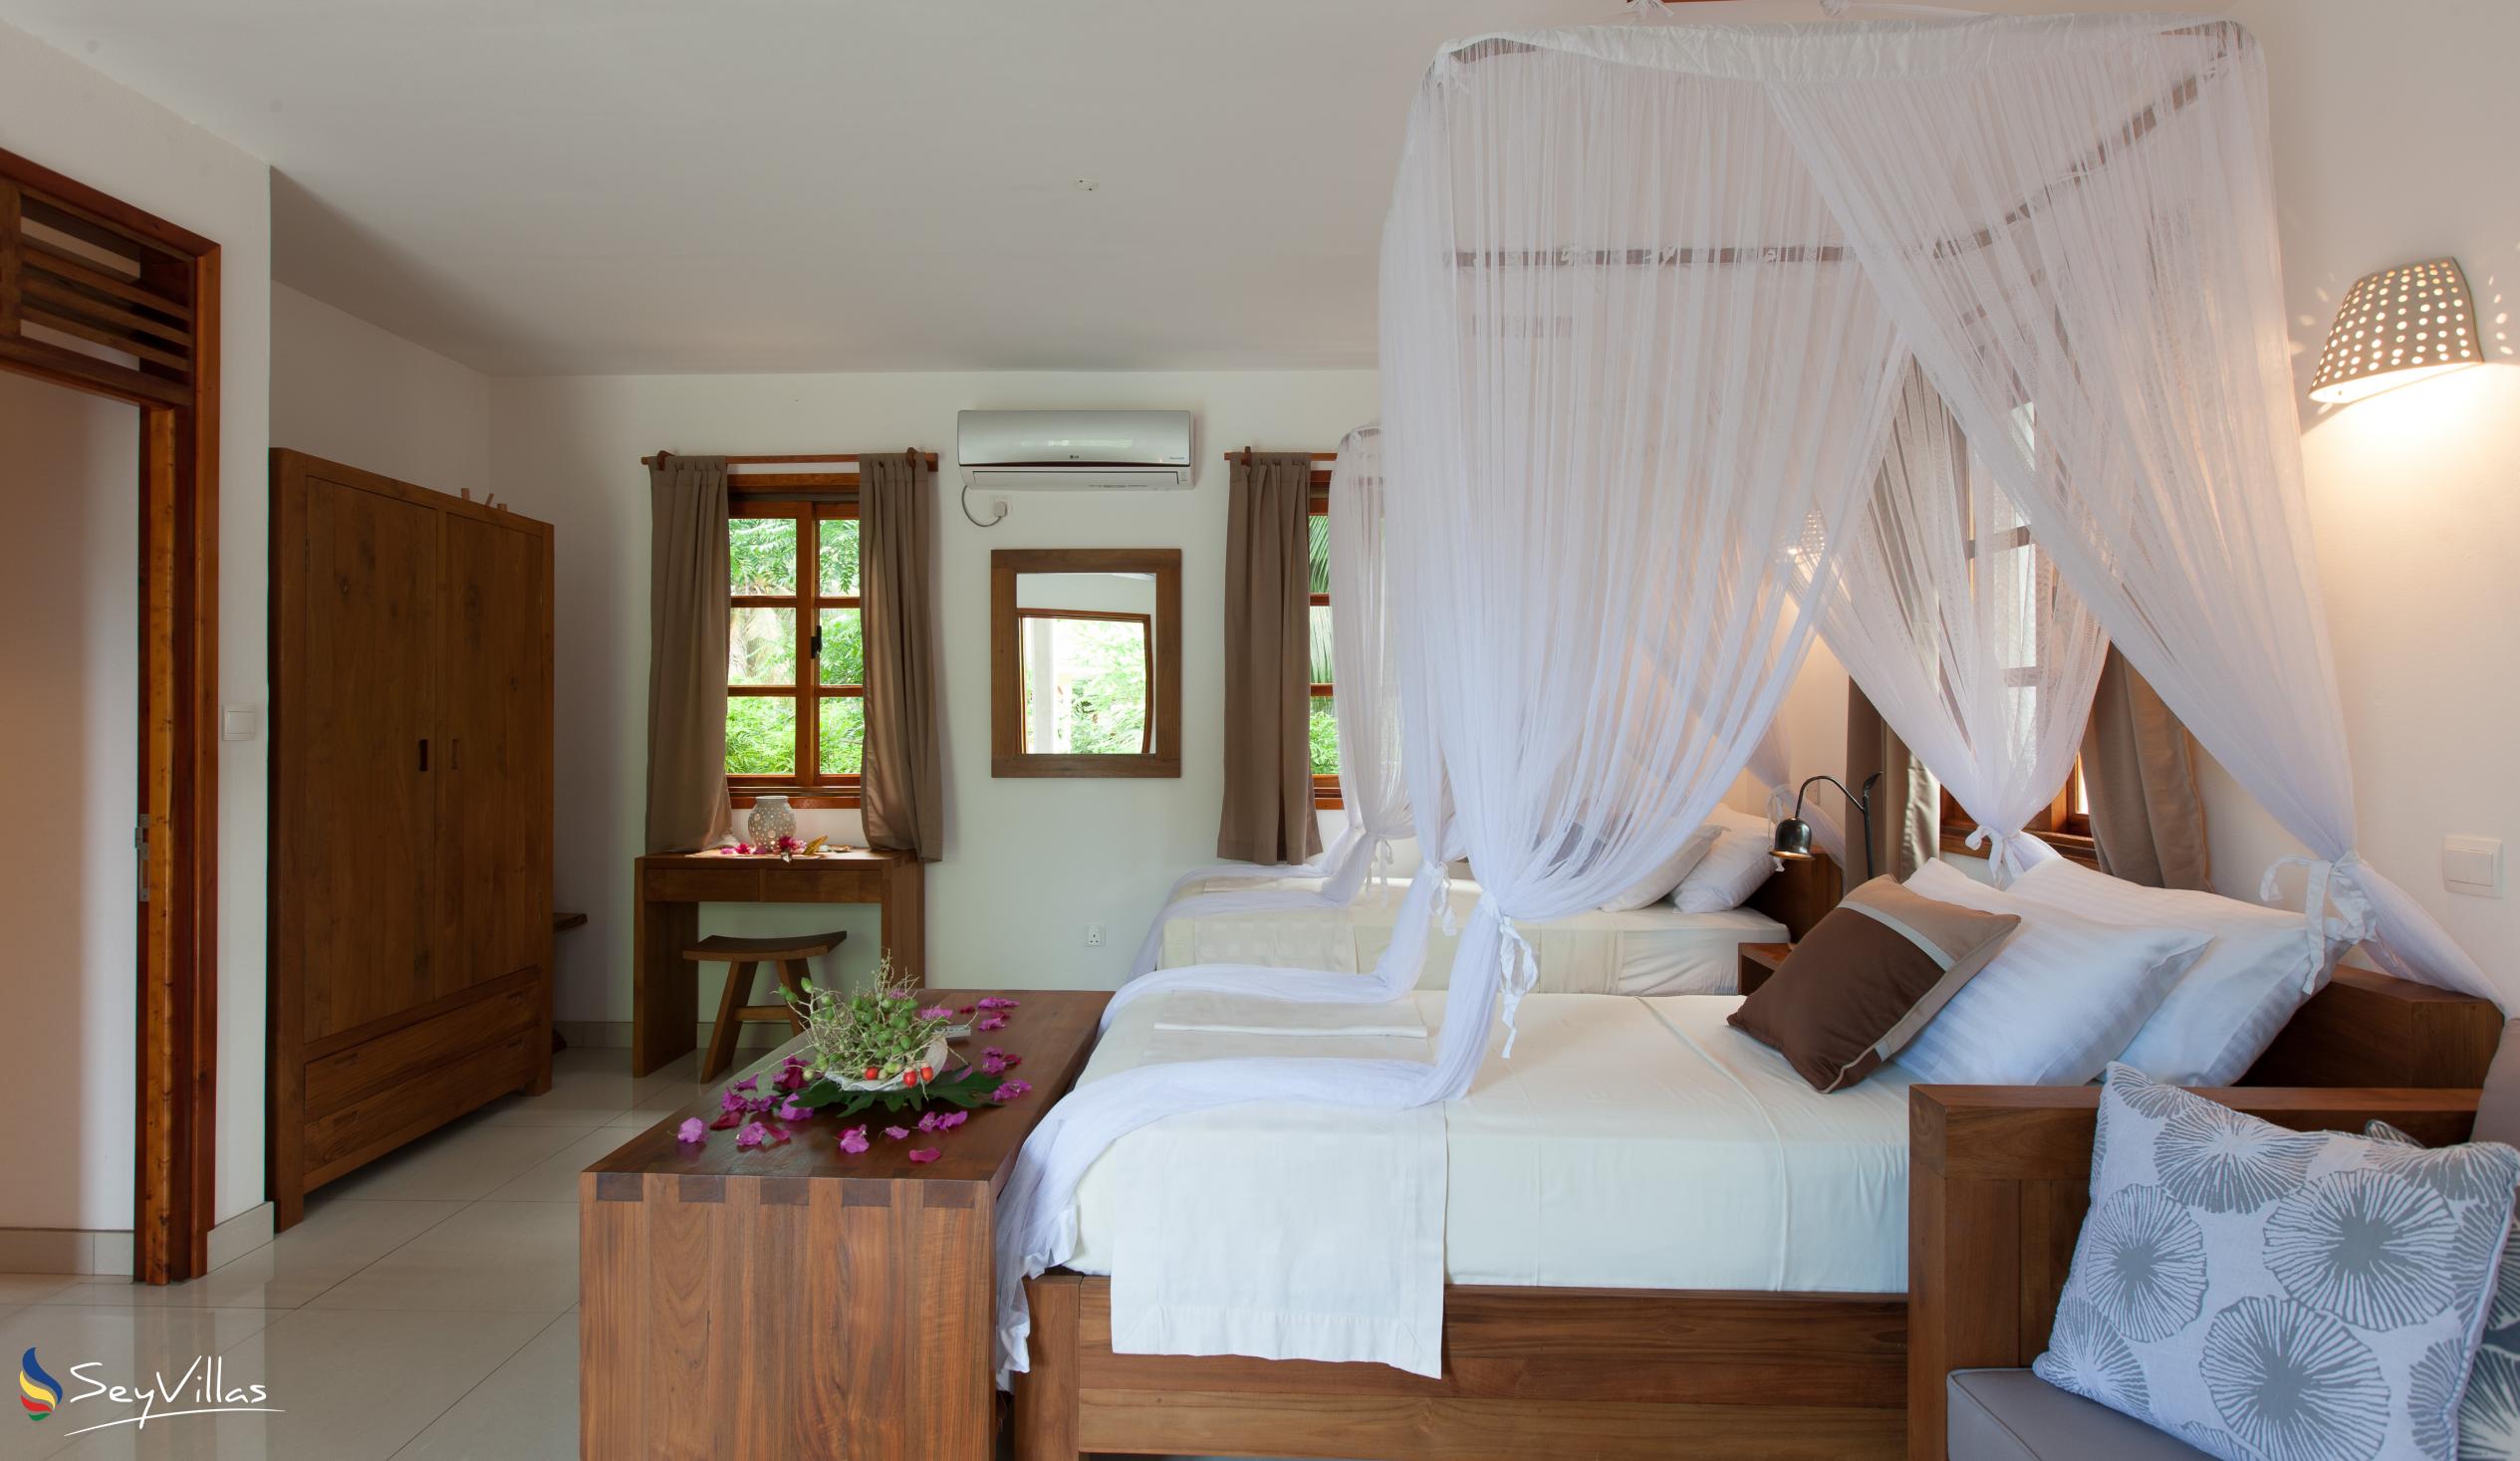 Foto 46: Domaine Les Rochers - Appartamento di Lusso Piano Terra Kaz Rochers - La Digue (Seychelles)